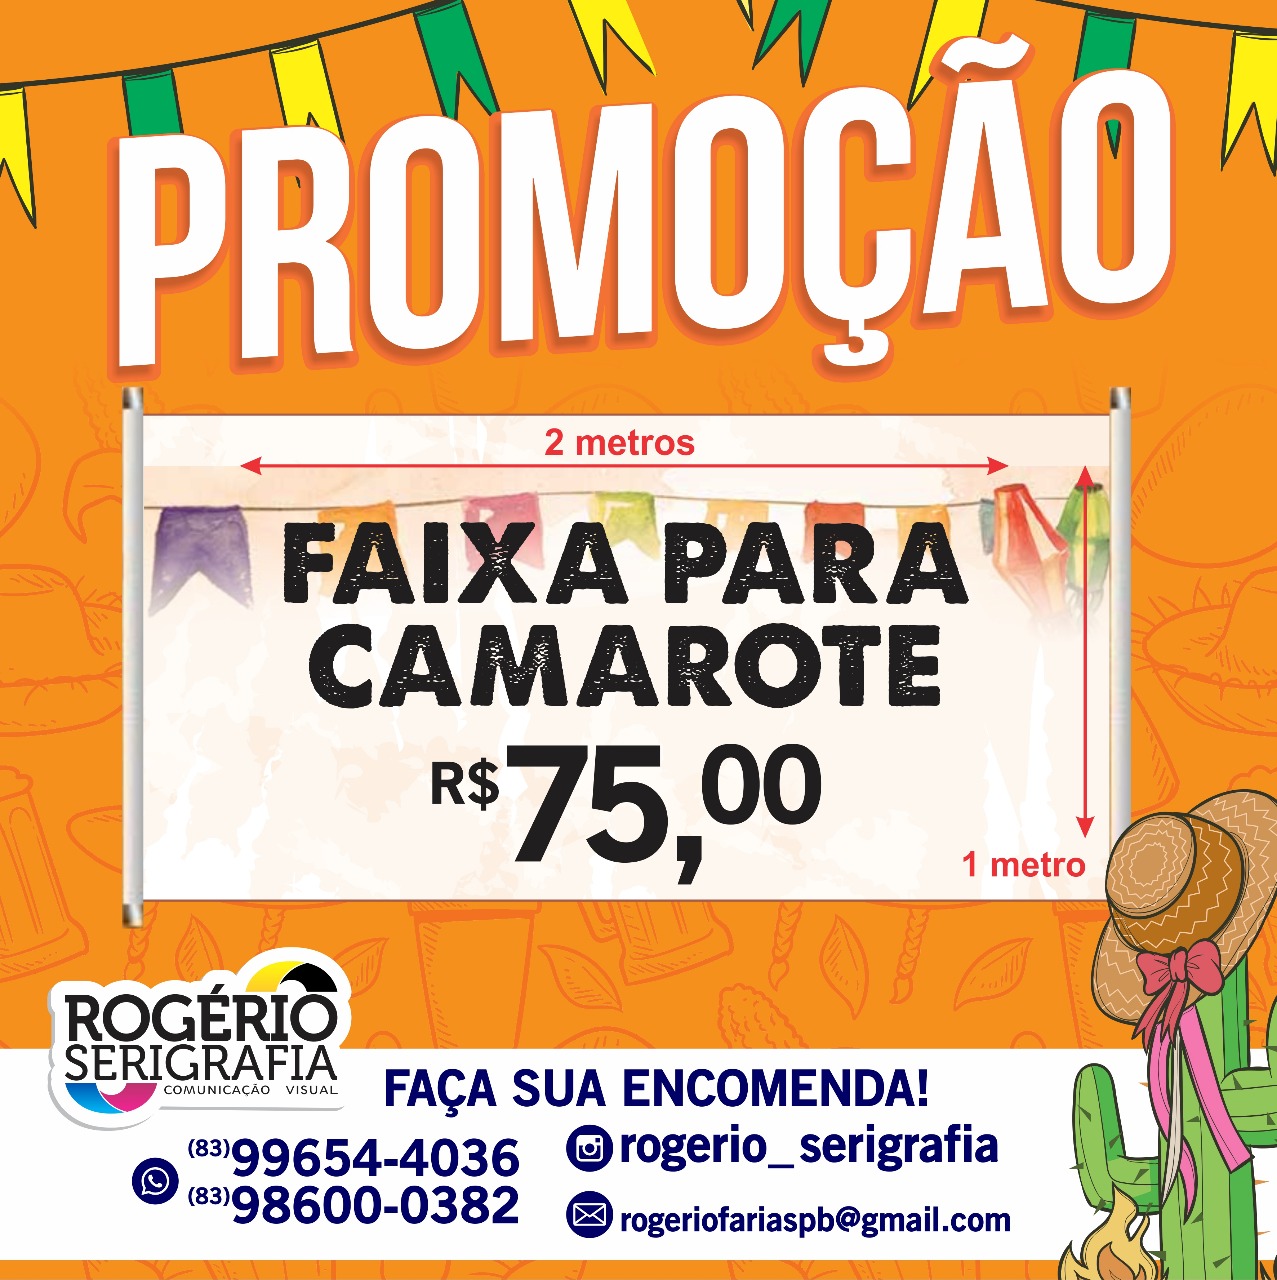 ROGERIO-SERIGRAFIA Promoção de Faixa para Camarote R$ 75,00 na Rogério Serigrafia